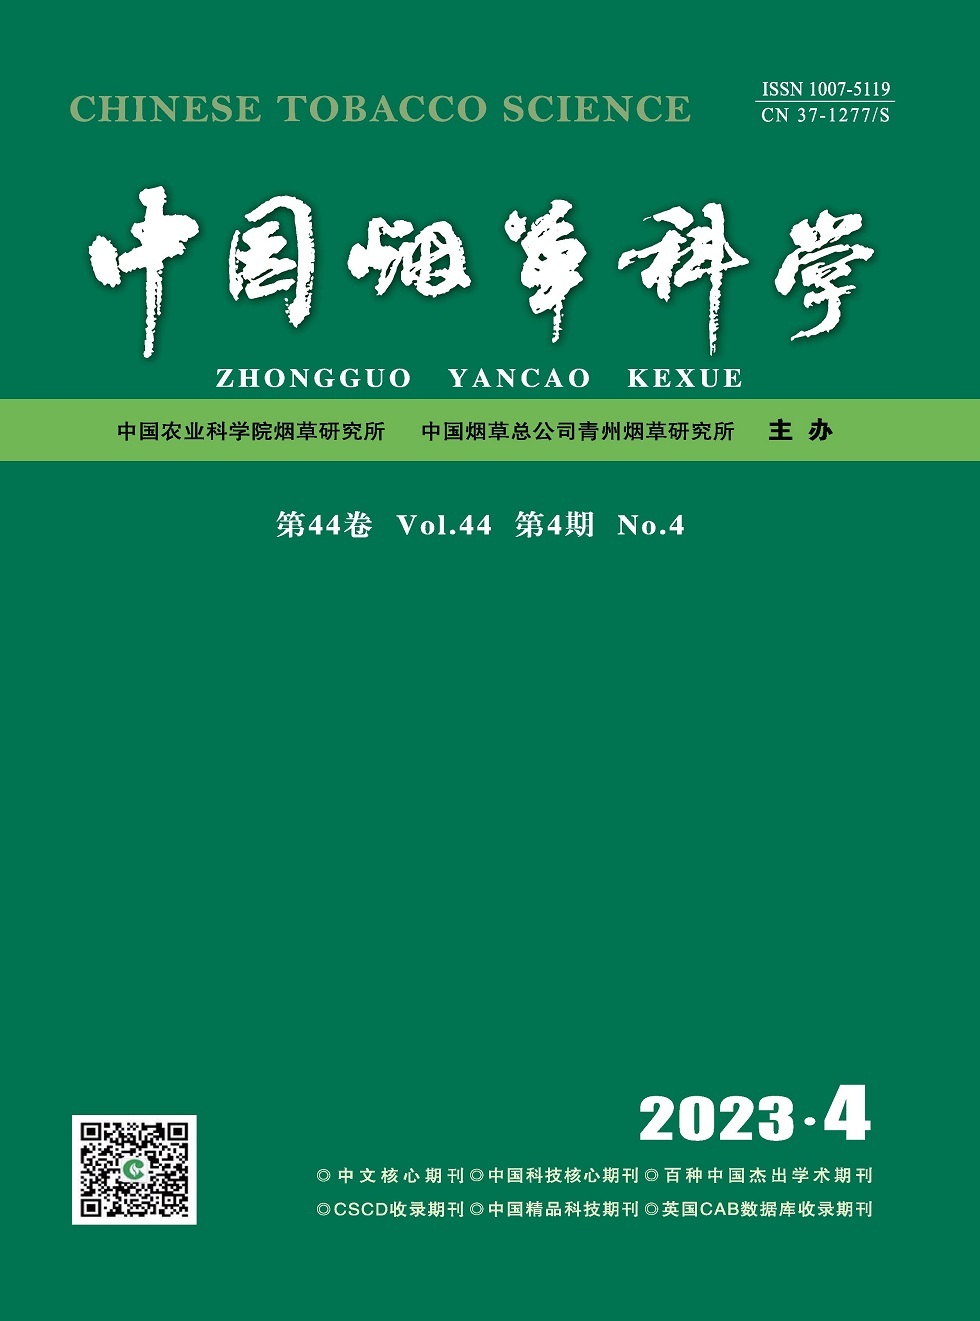 《中国烟草科学》杂志_中国烟草科学2023年04期杂志封面